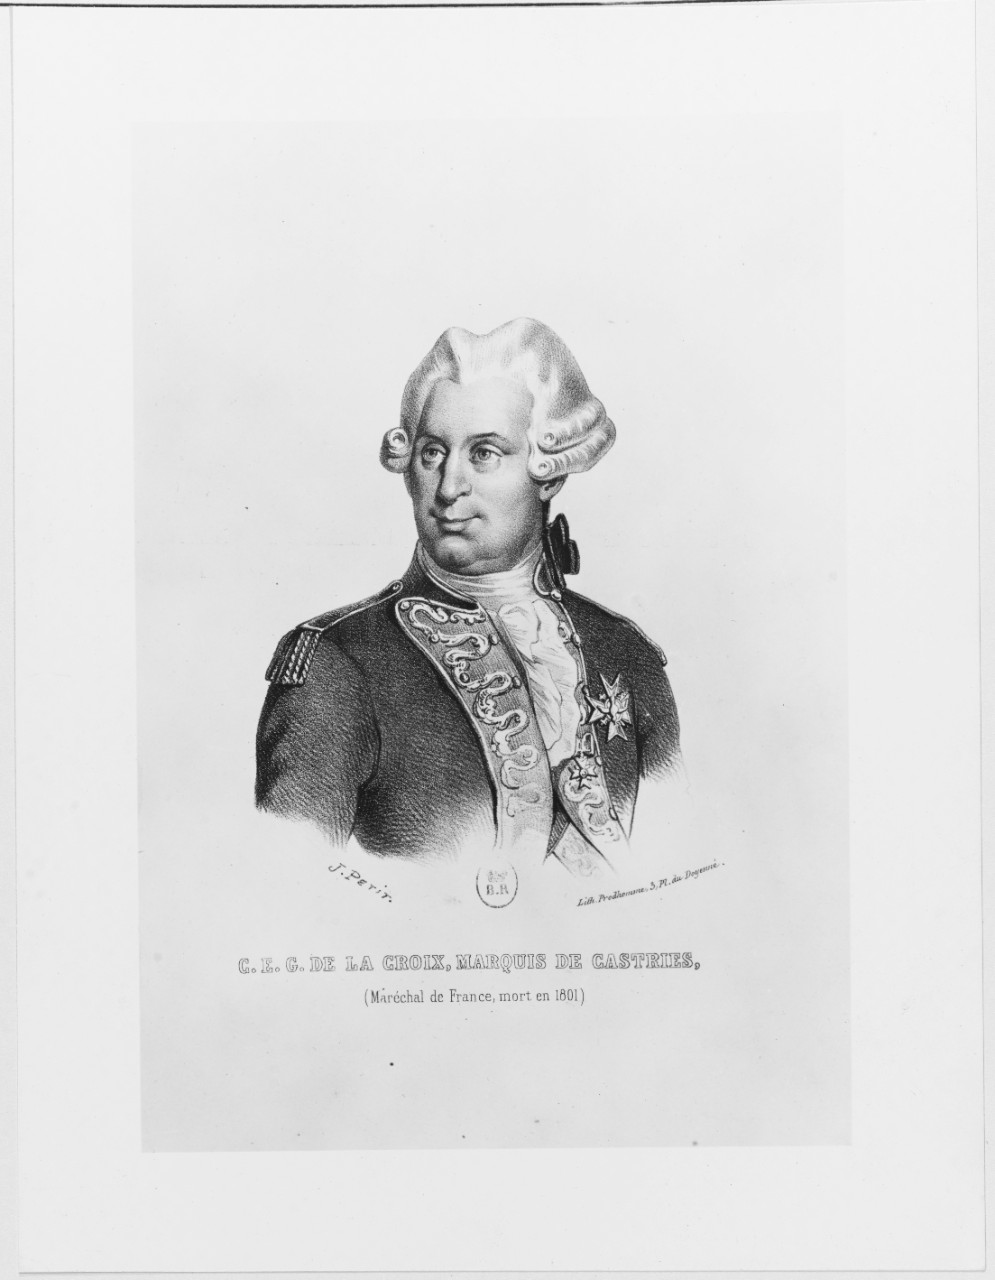 Portrait of C.E.G. De La Croix, Marquis De Castries, Marechal de France